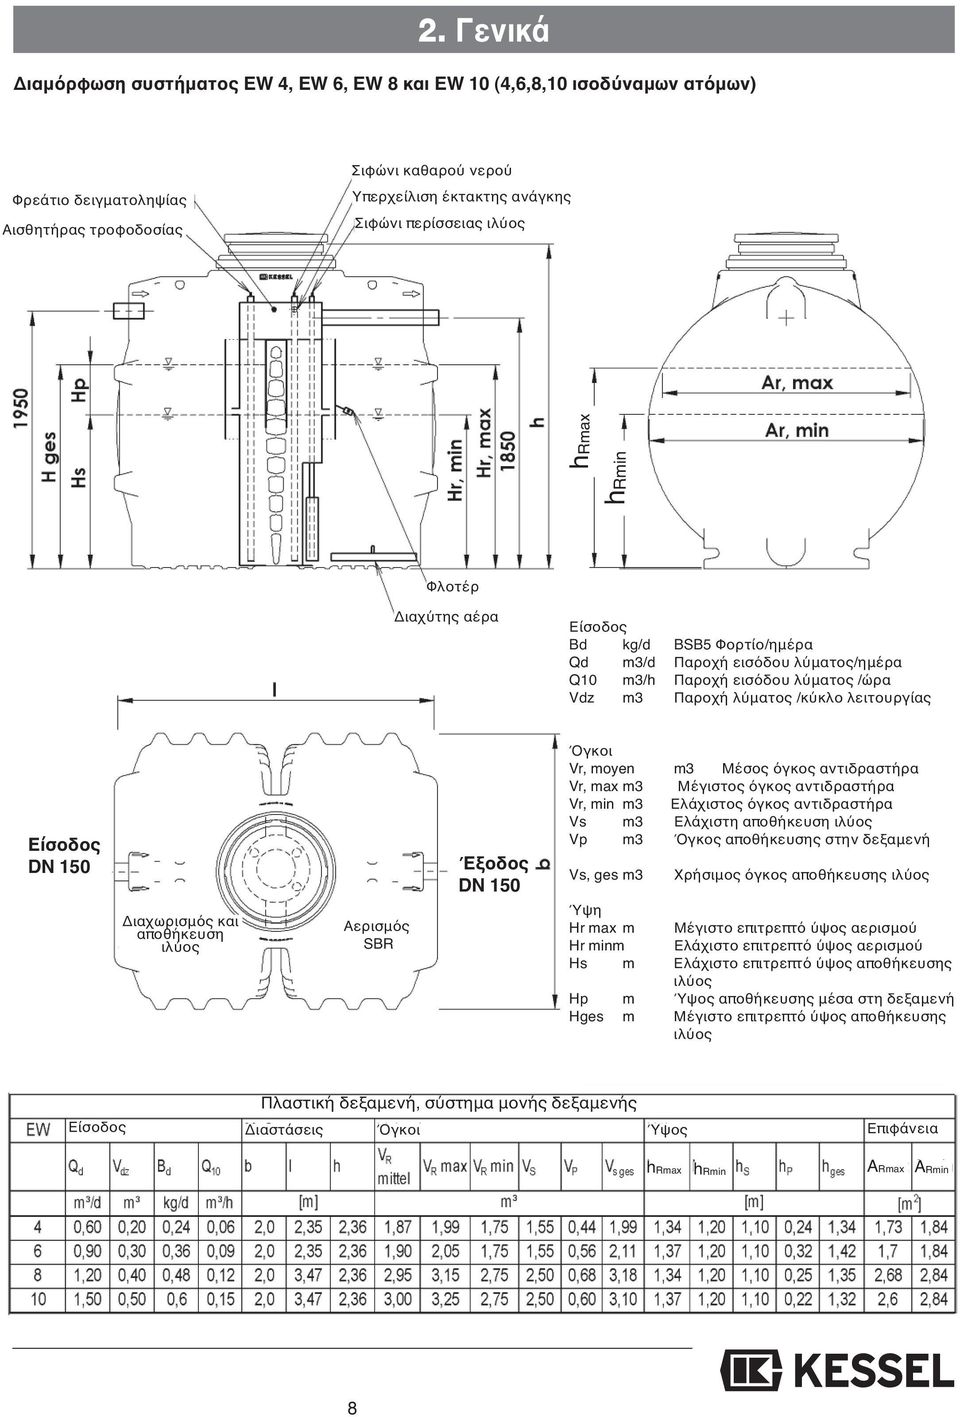 Είσοδος DN 150 Διαχωρισμός και αποθήκευση ιλύος Αερισμός SBR Έξοδος DN 150 Όγκοι Vr, moyen m3 Μέσος όγκος αντιδραστήρα Vr, max m3 Μέγιστος όγκος αντιδραστήρα Vr, min m3 Ελάχιστος όγκος αντιδραστήρα